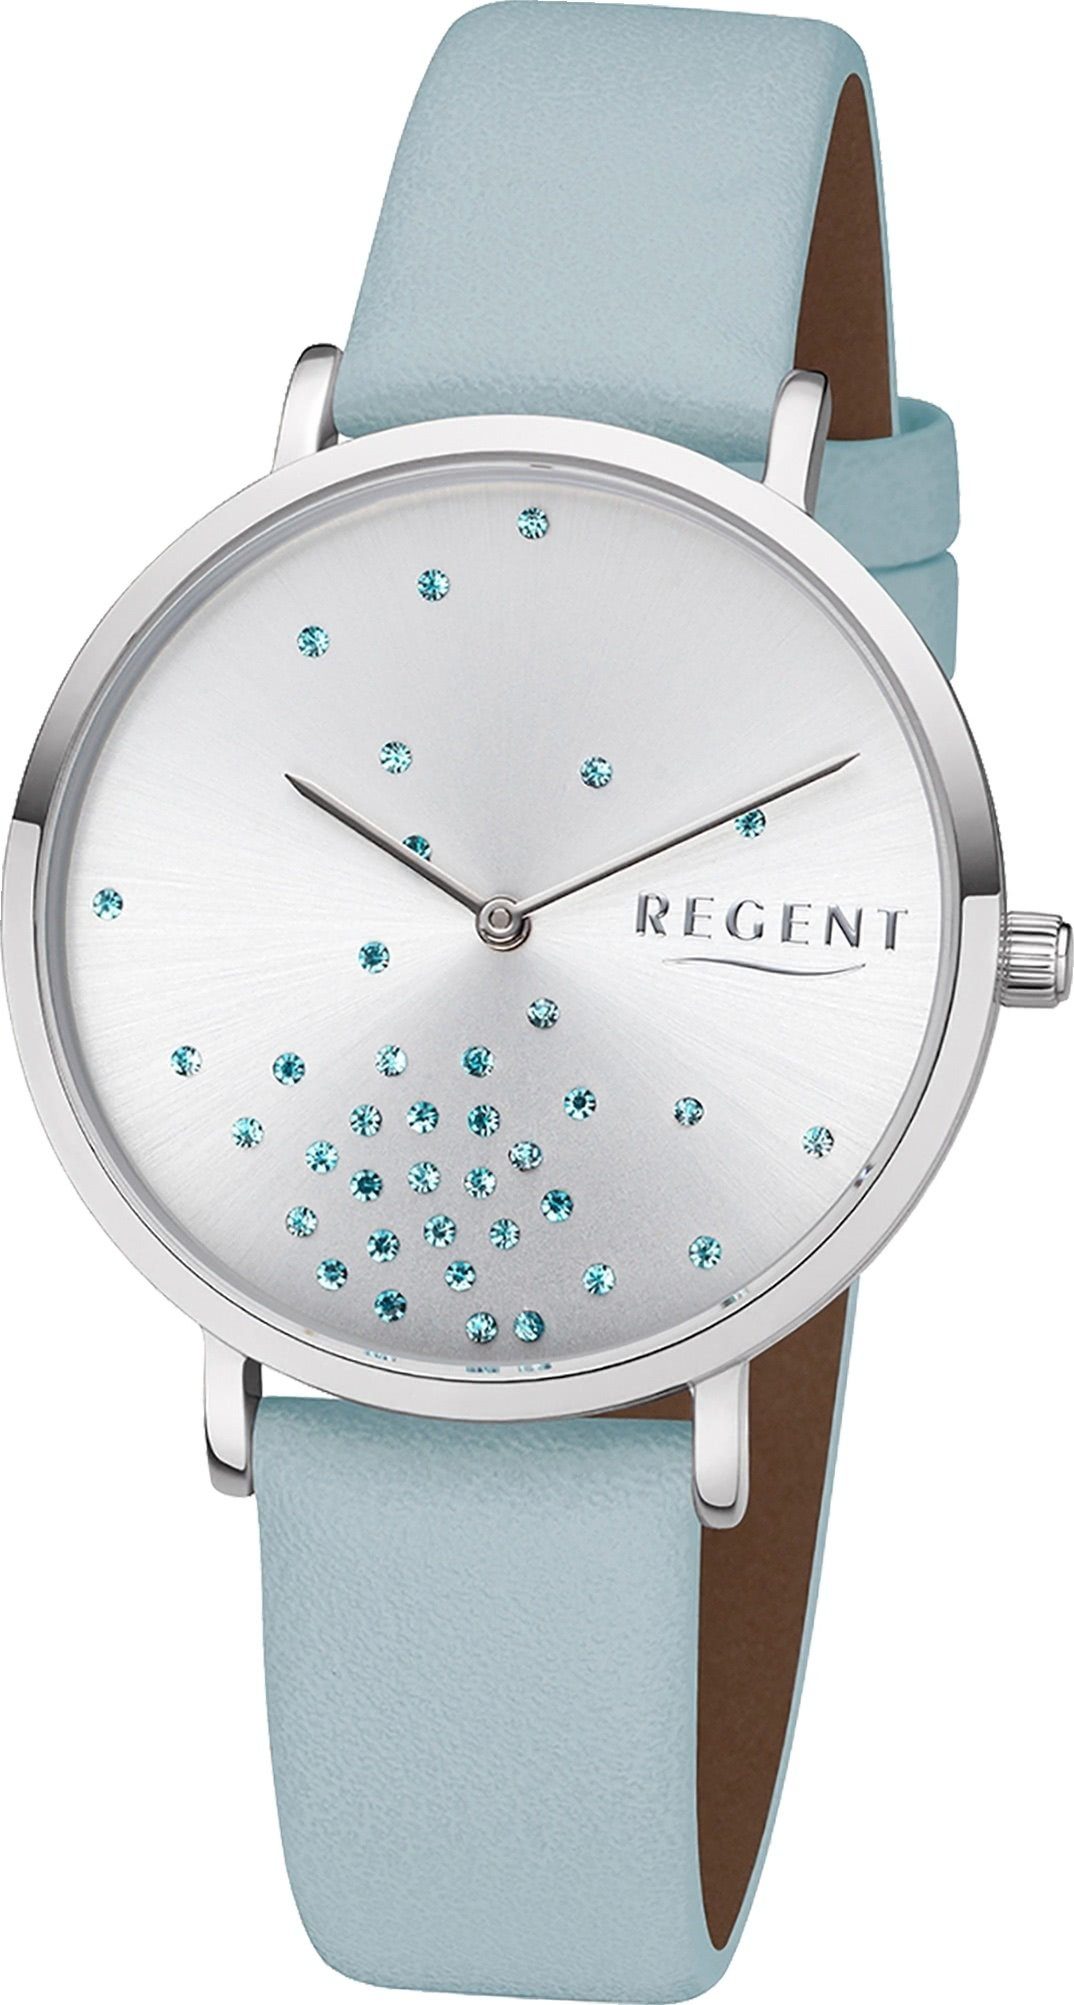 Regent Quarzuhr Regent Leder Damen Uhr BA-599 Armbanduhr, Damenuhr  Lederarmband hellblau, rundes Gehäuse, mittel (ca. 36mm)